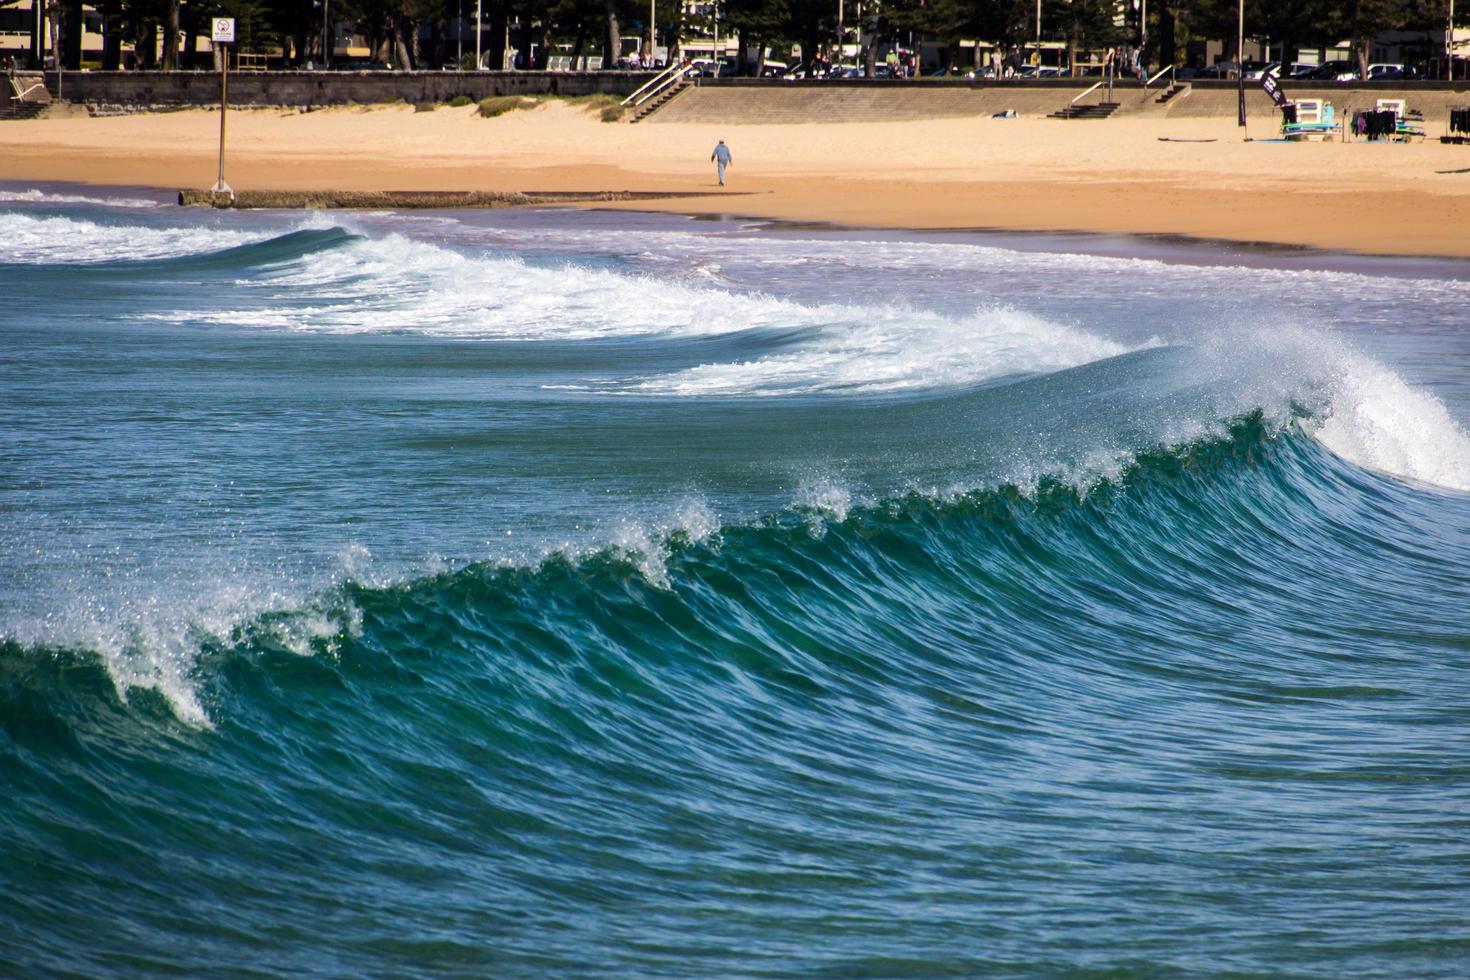 manly beach, australien, 2020 - vågor nära stranden under dagen foto